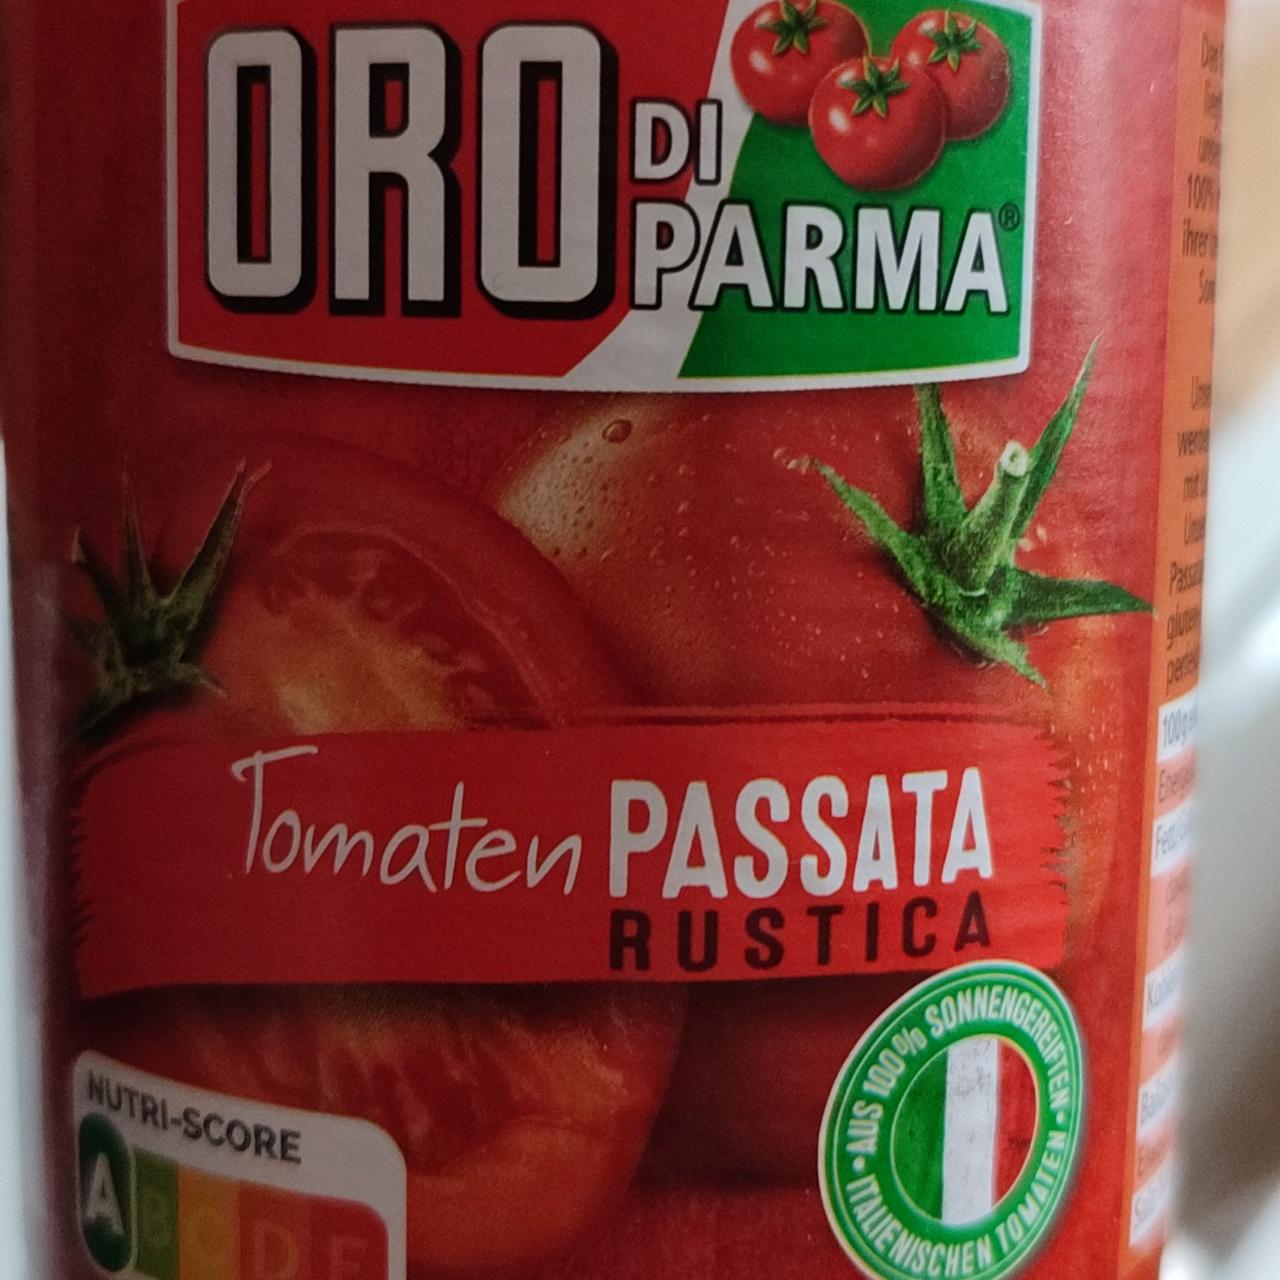 Fotografie - Tomaten Passata Rustica Oro di parma